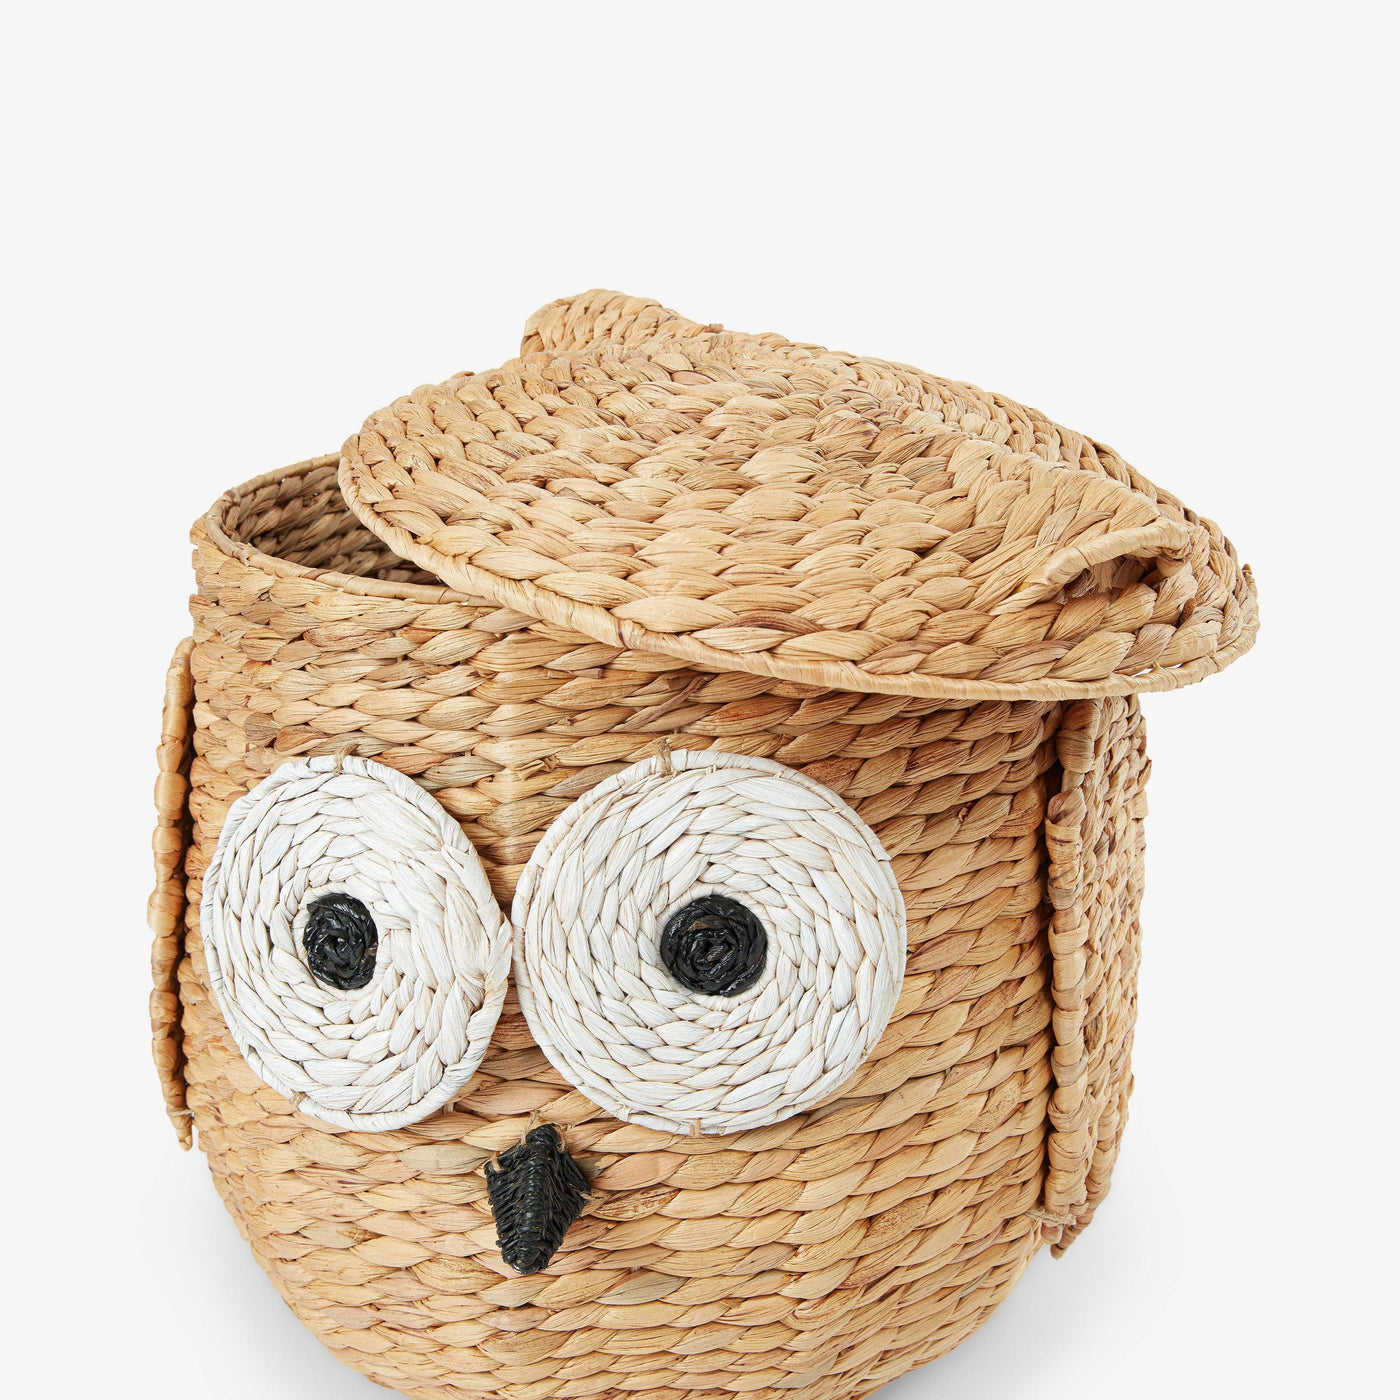 Owl Basket With Lid, Natural Baskets sazy.com